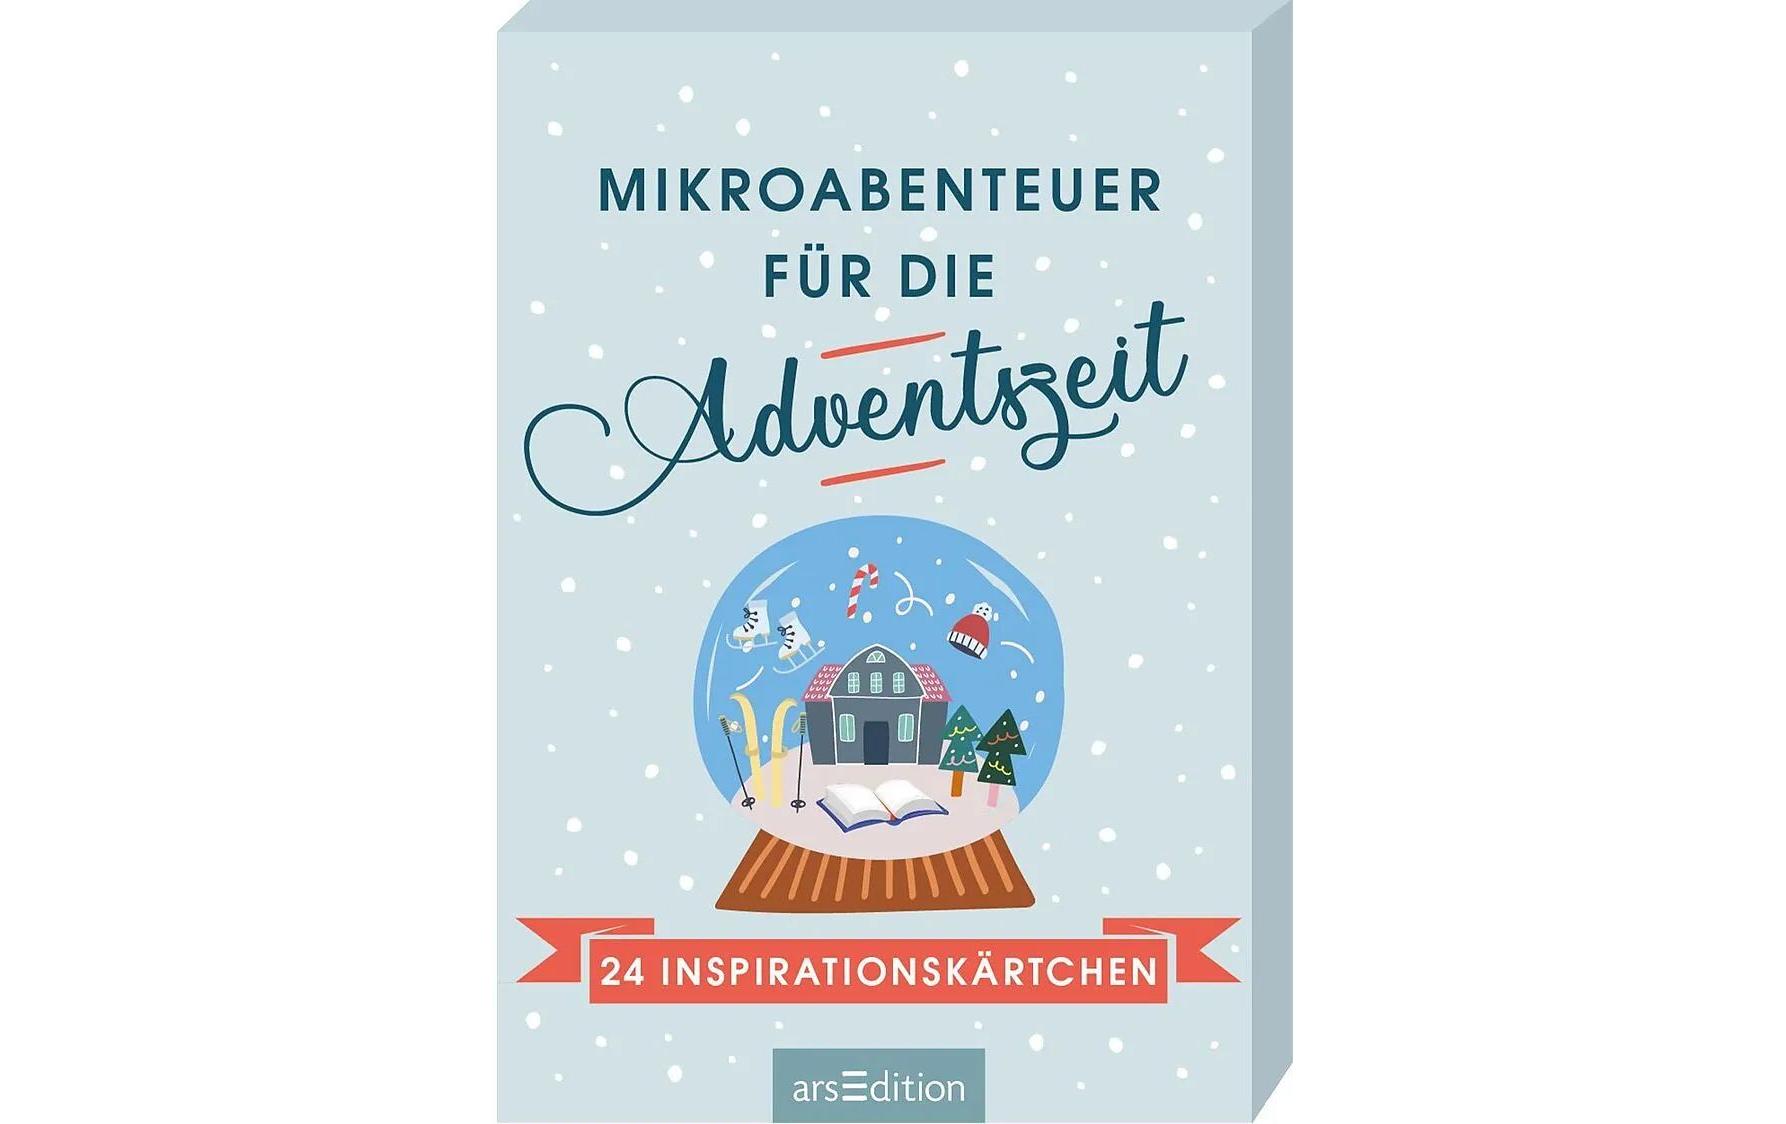 Literatur diverse Adventskalender-Buch Mikroabenteuer